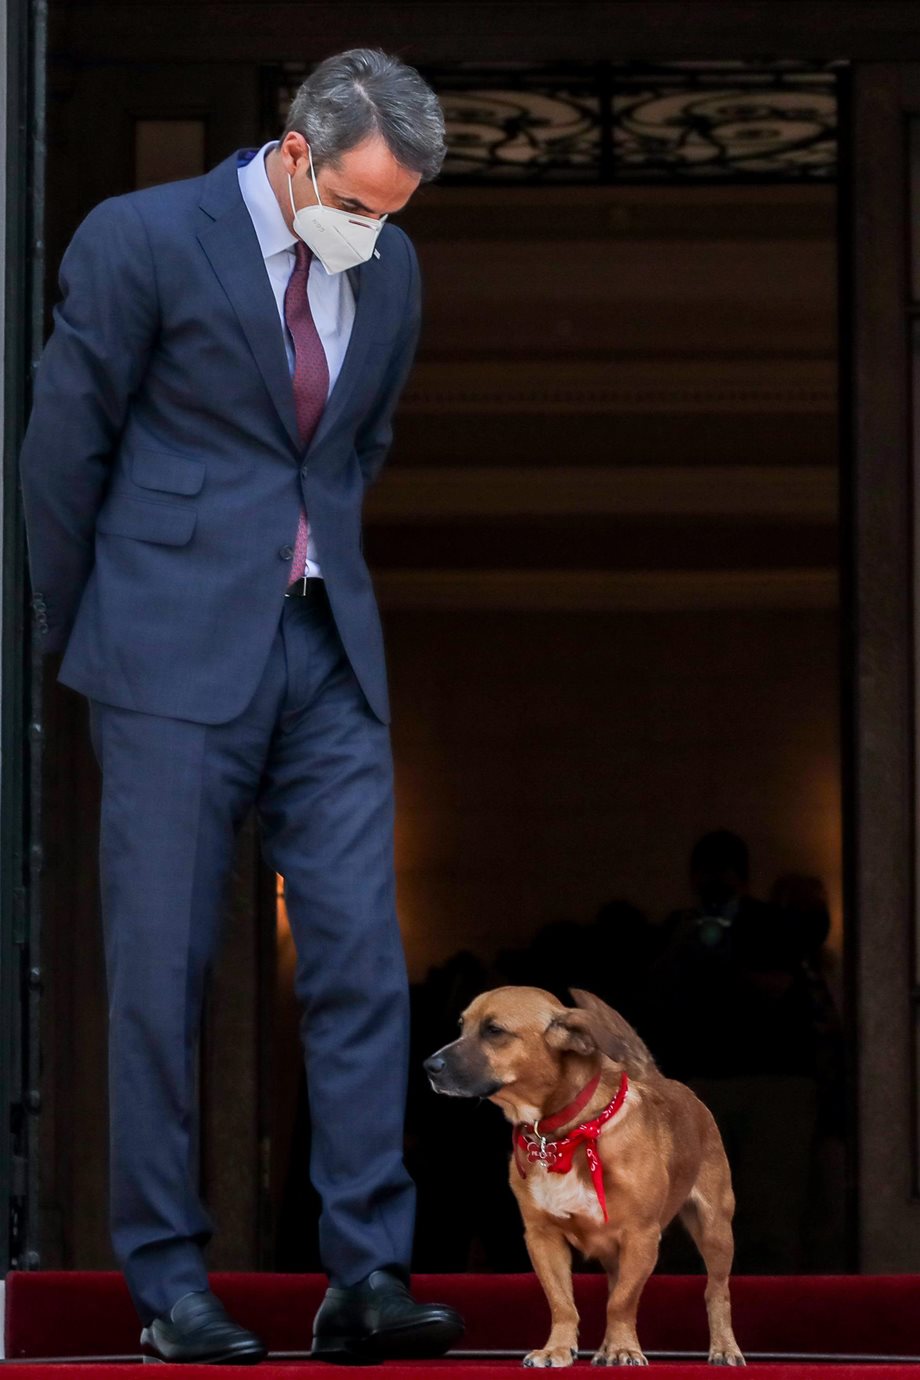 Κυριάκος Μητσοτάκης: Ο σκύλος του, Πίνατ, διέκοψε τη συνέντευξη Τύπου με τον πρωθυπουργό της Σλοβακίας